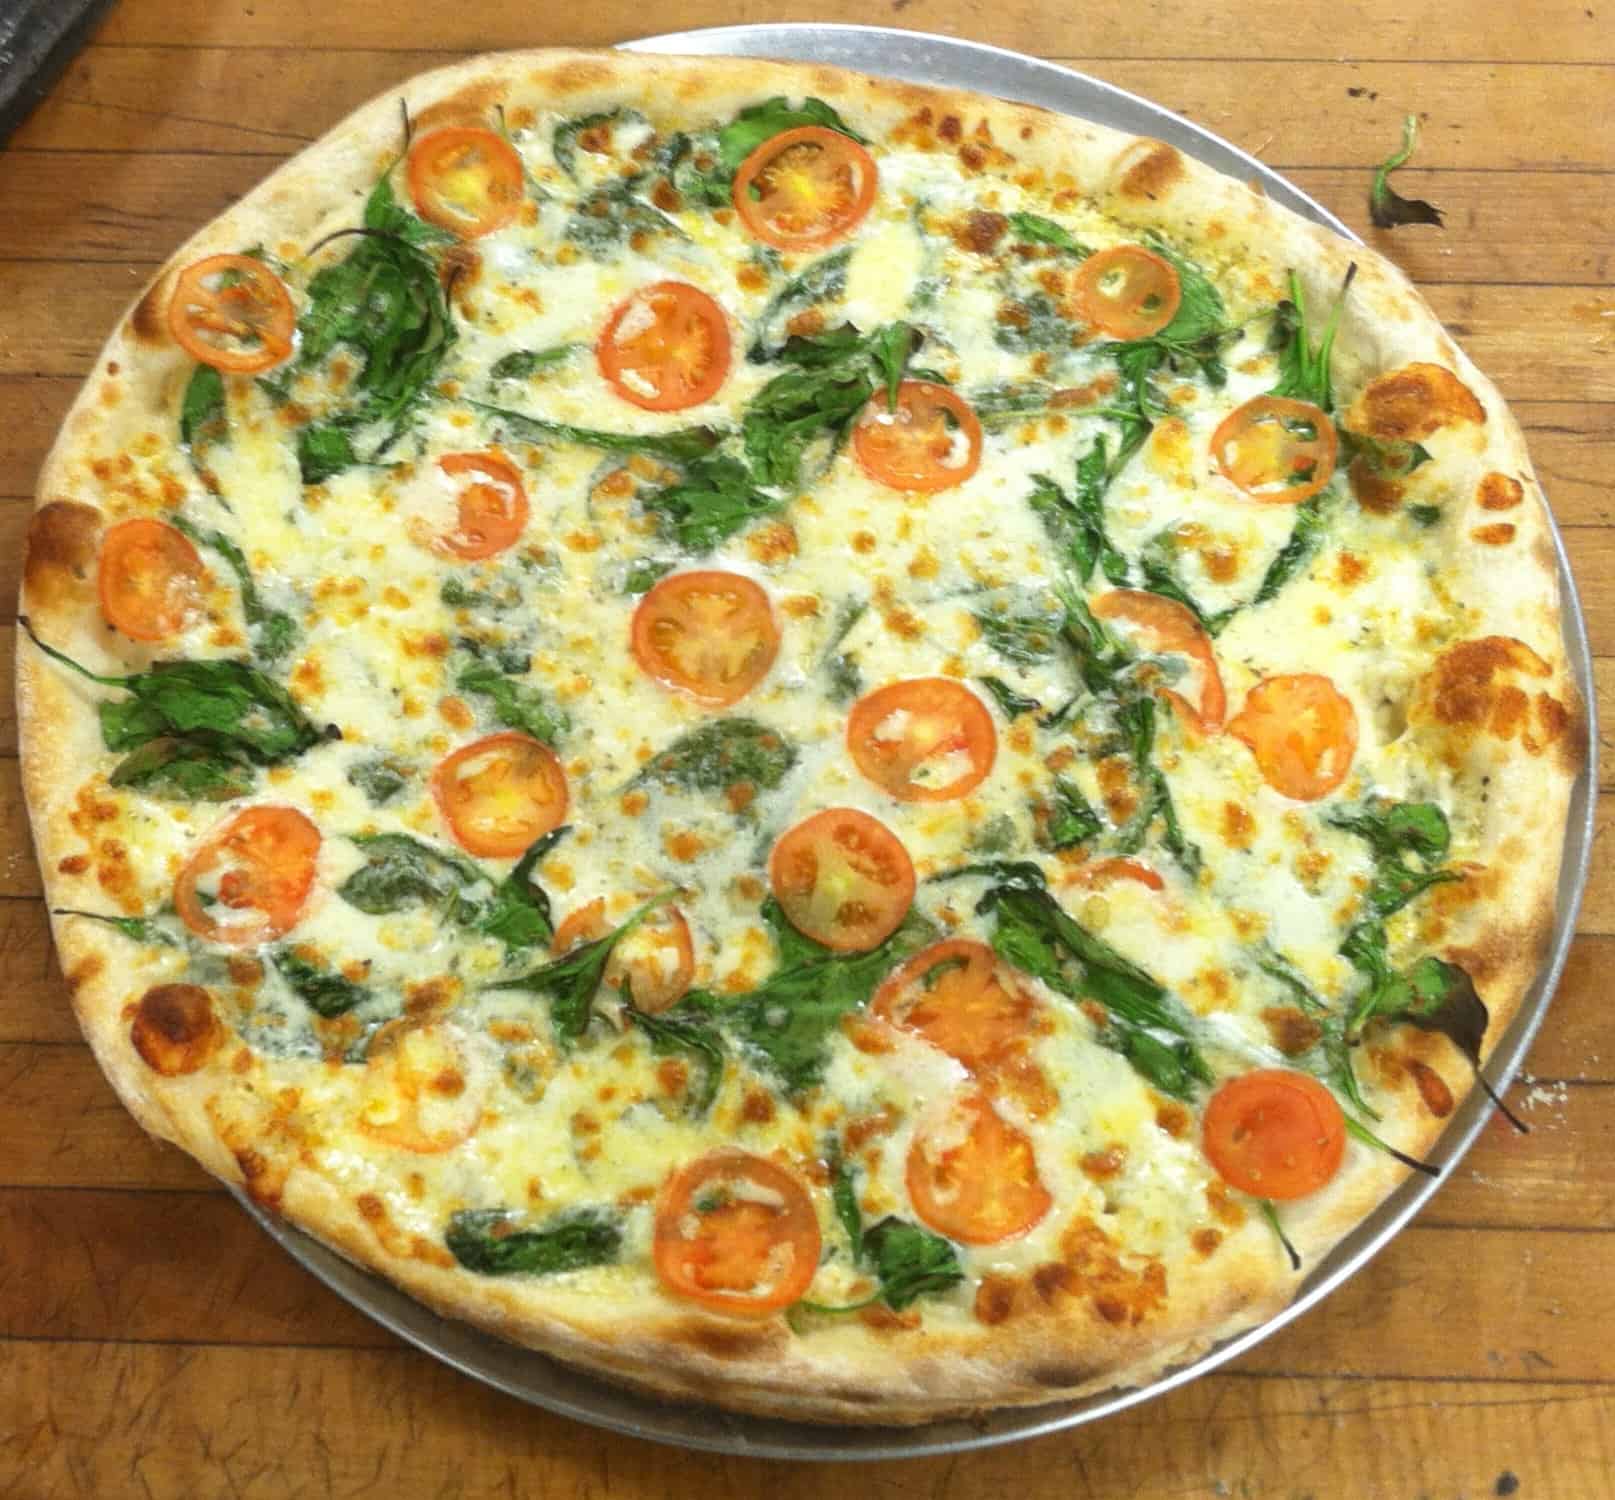 Ramuntos Brick Oven Pizza - Brattleboro - Spinach Tomato Pizza